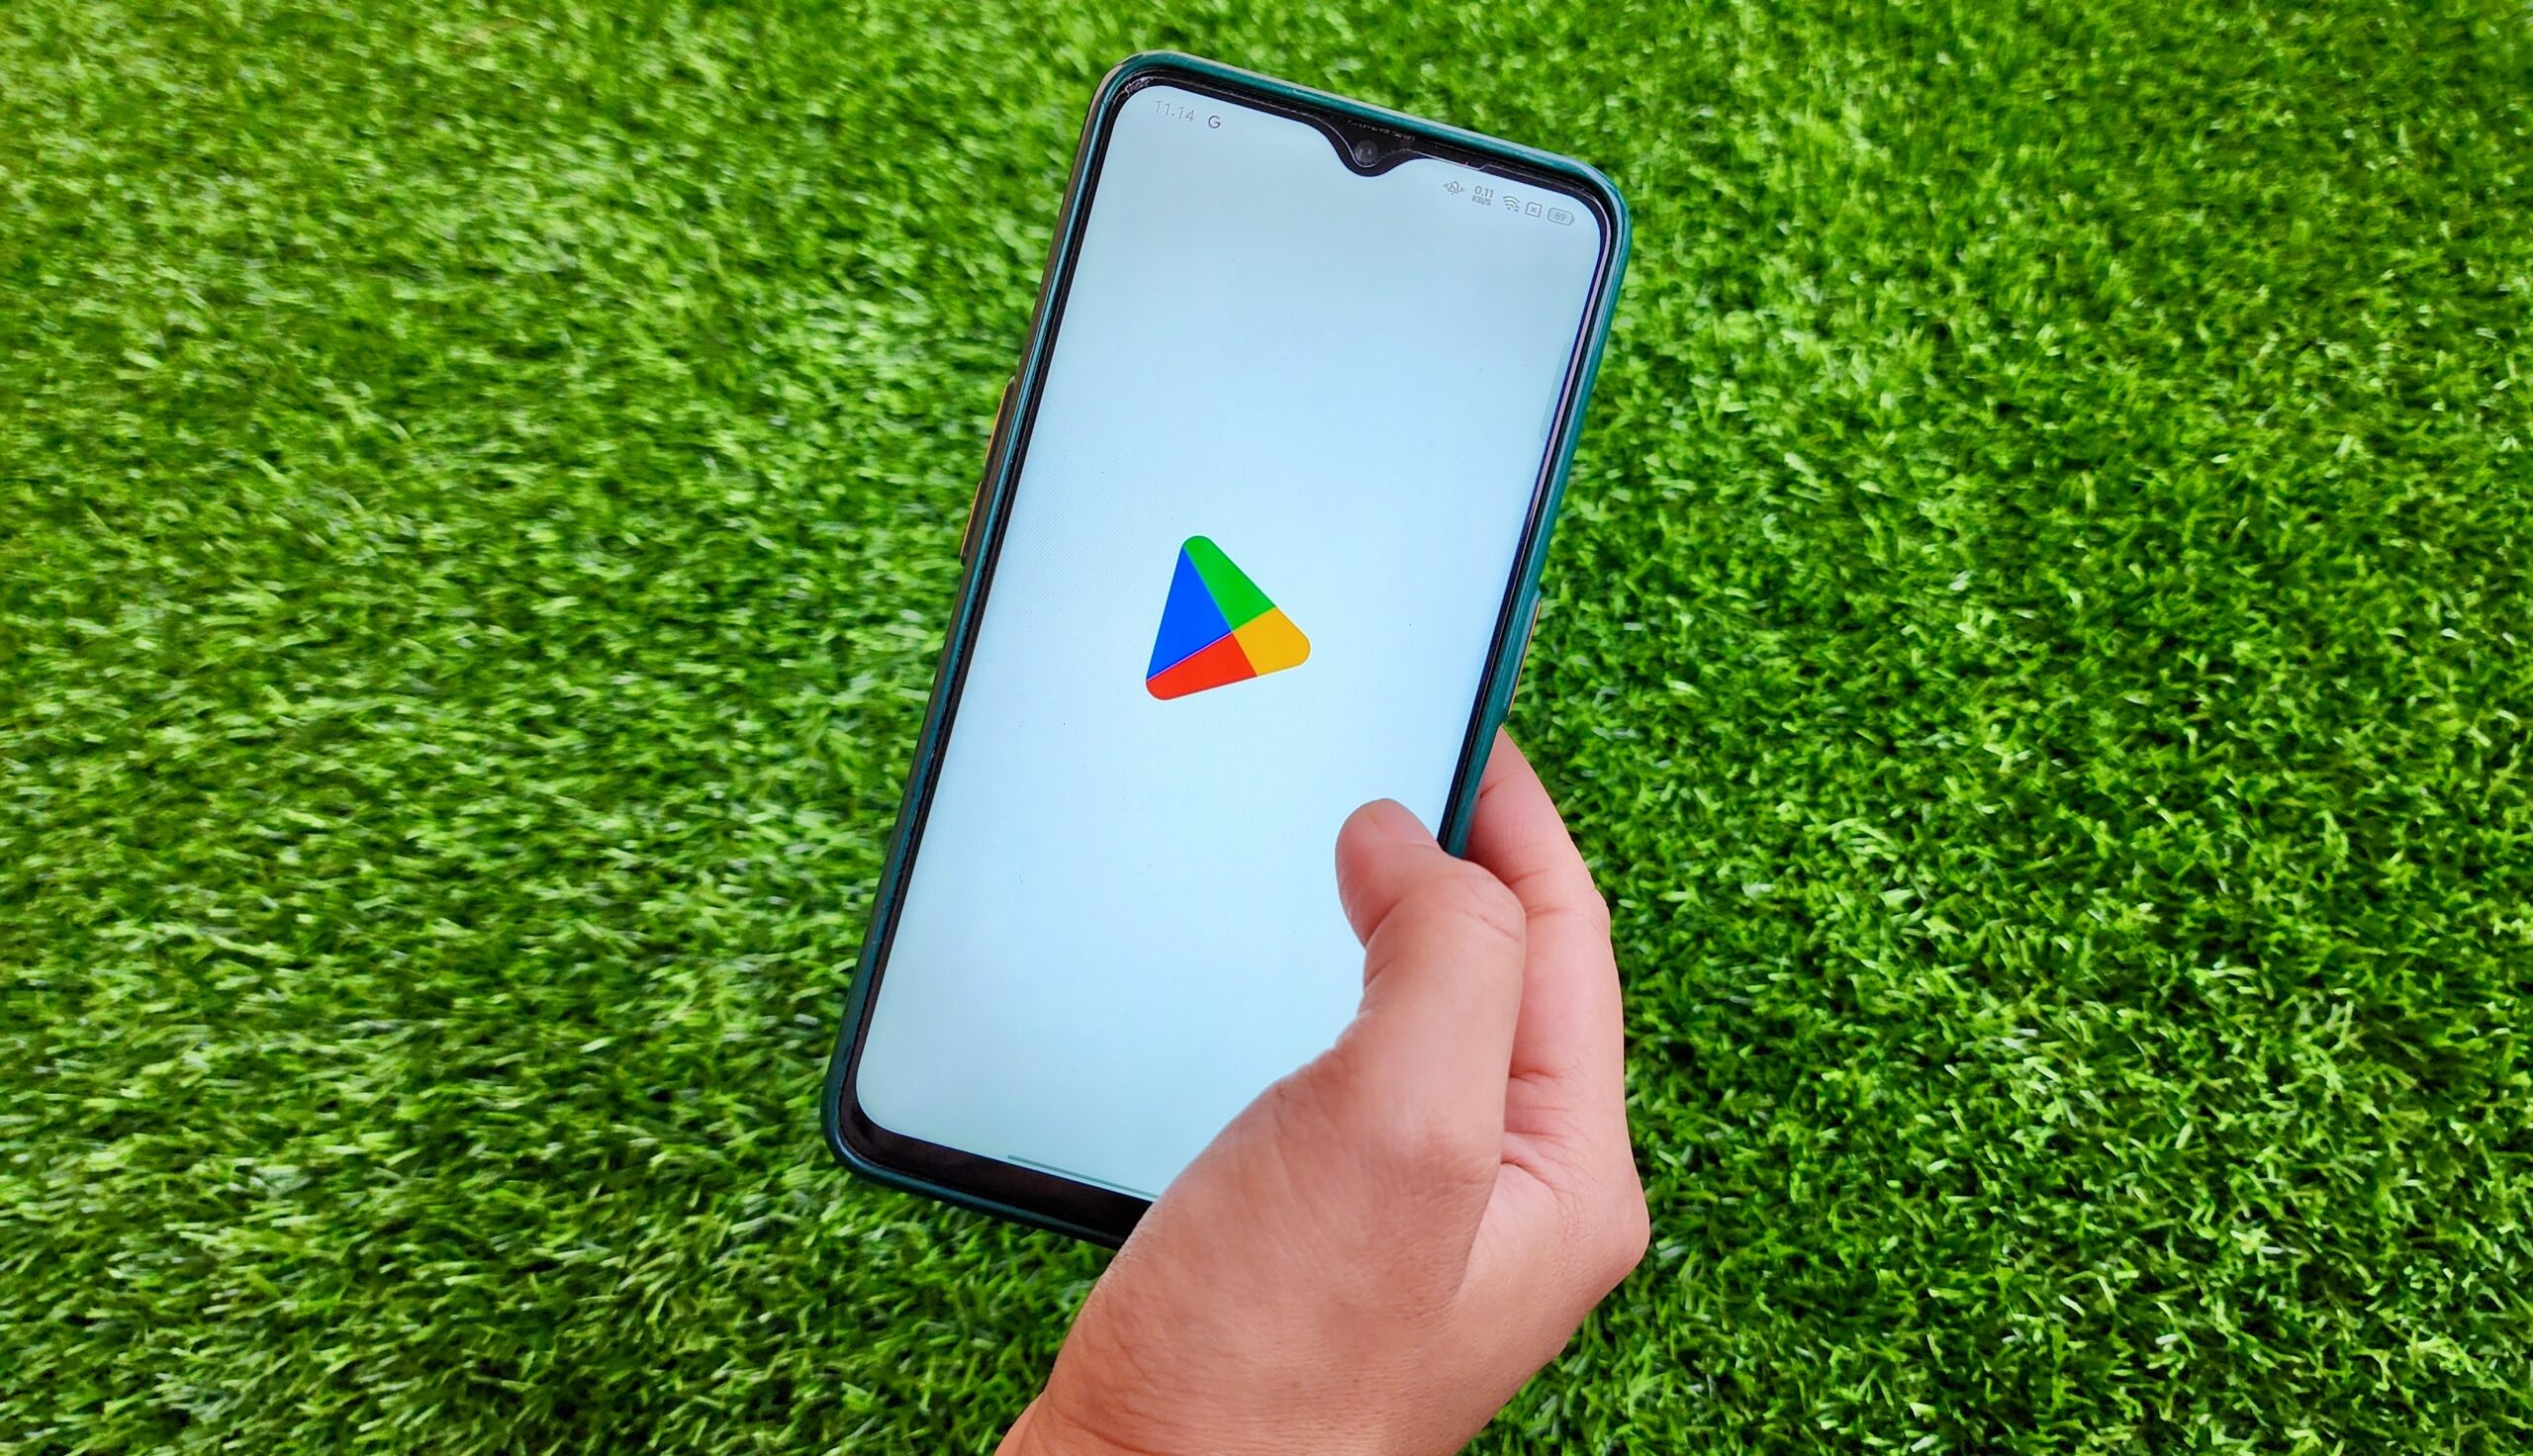 Dłoń trzymająca smartfon z ekranem pokazującym logo Google Play na tle zielonej trawy.